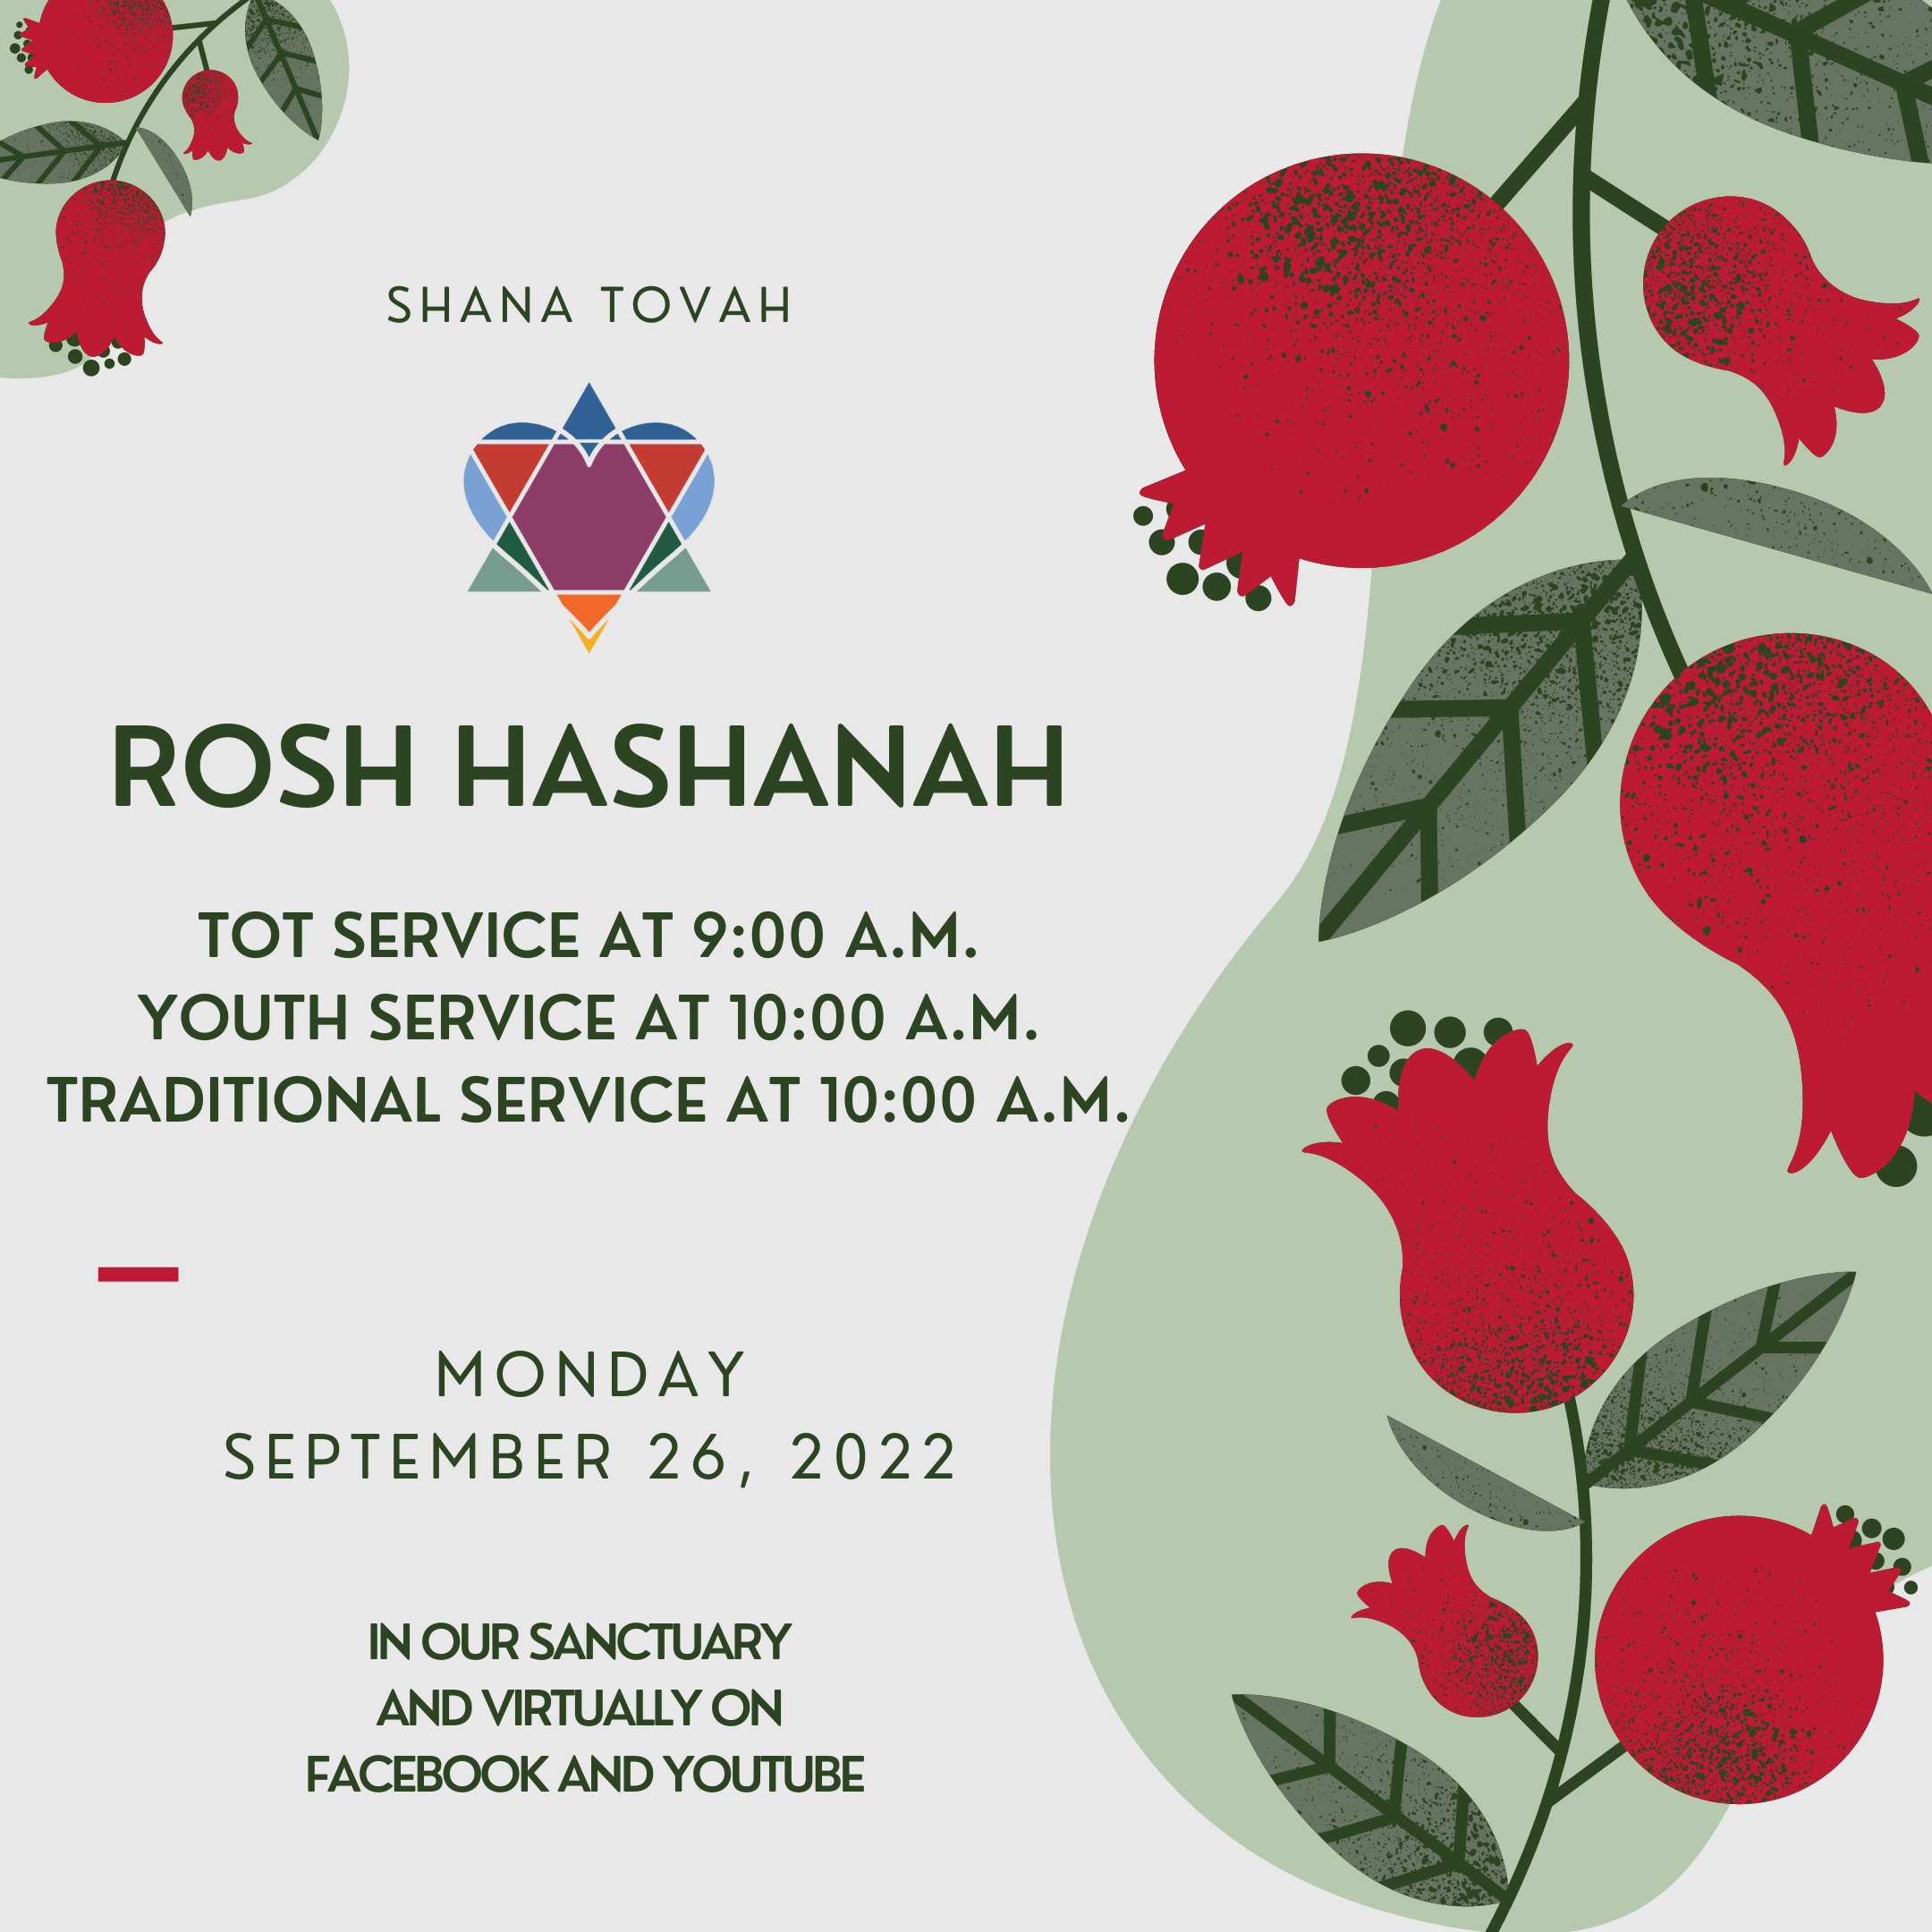 ROSH HASHANAH YOUTH SERVICE